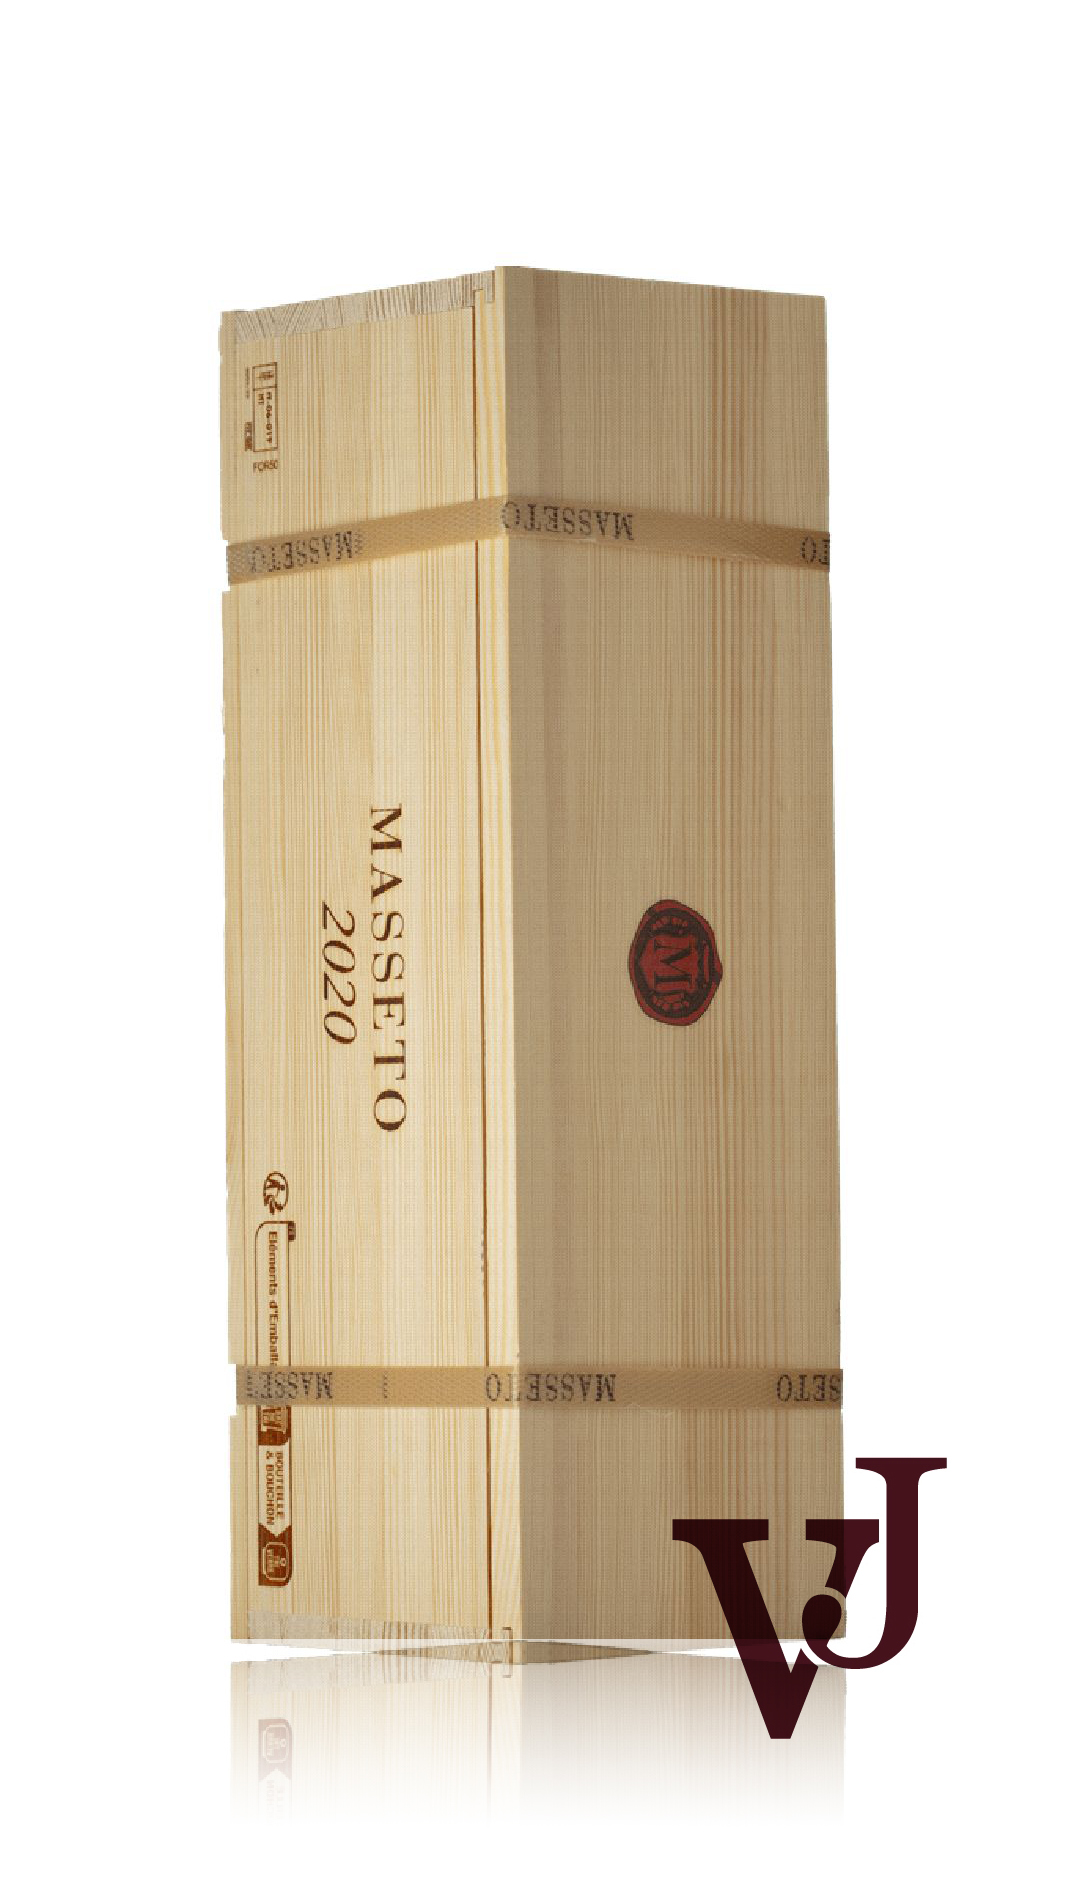 Rött vin - Masseto 2020 artikel nummer 9181706 från producenten Masseto från Italien